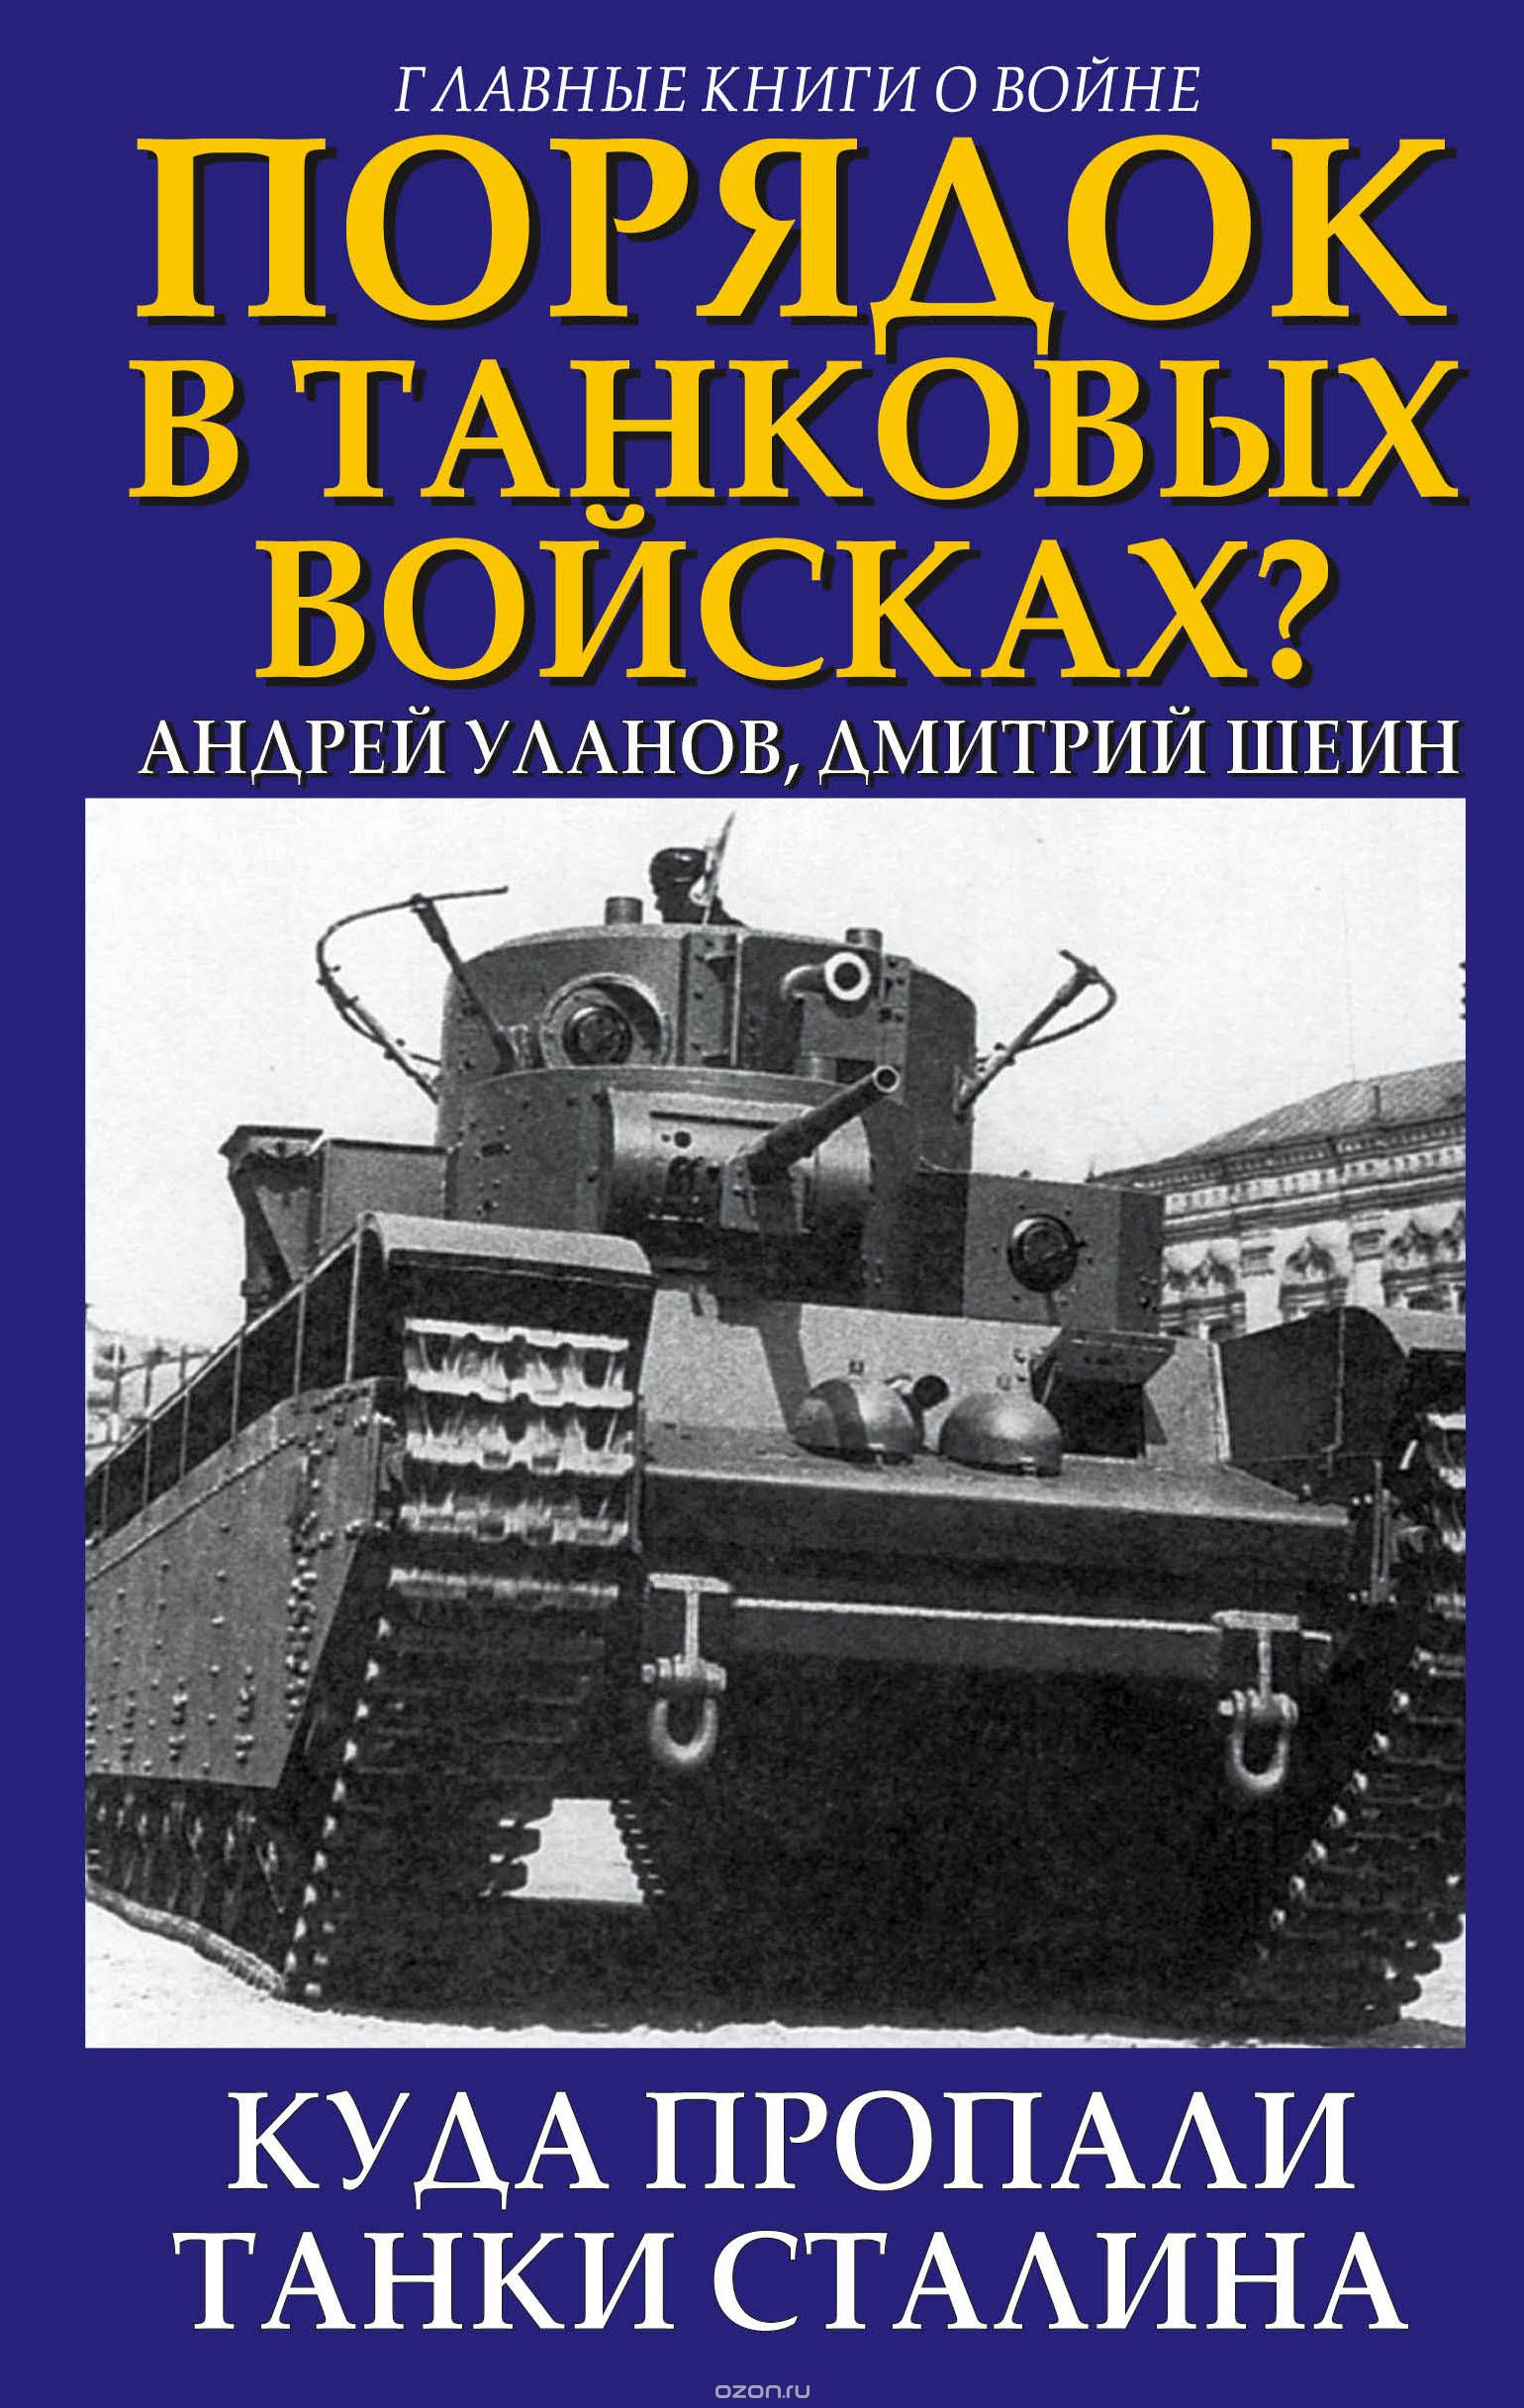 Скачать книгу "Порядок в танковых войсках? Куда пропали танки Сталина, Андрей Уланов; Дмитрий Шеин"